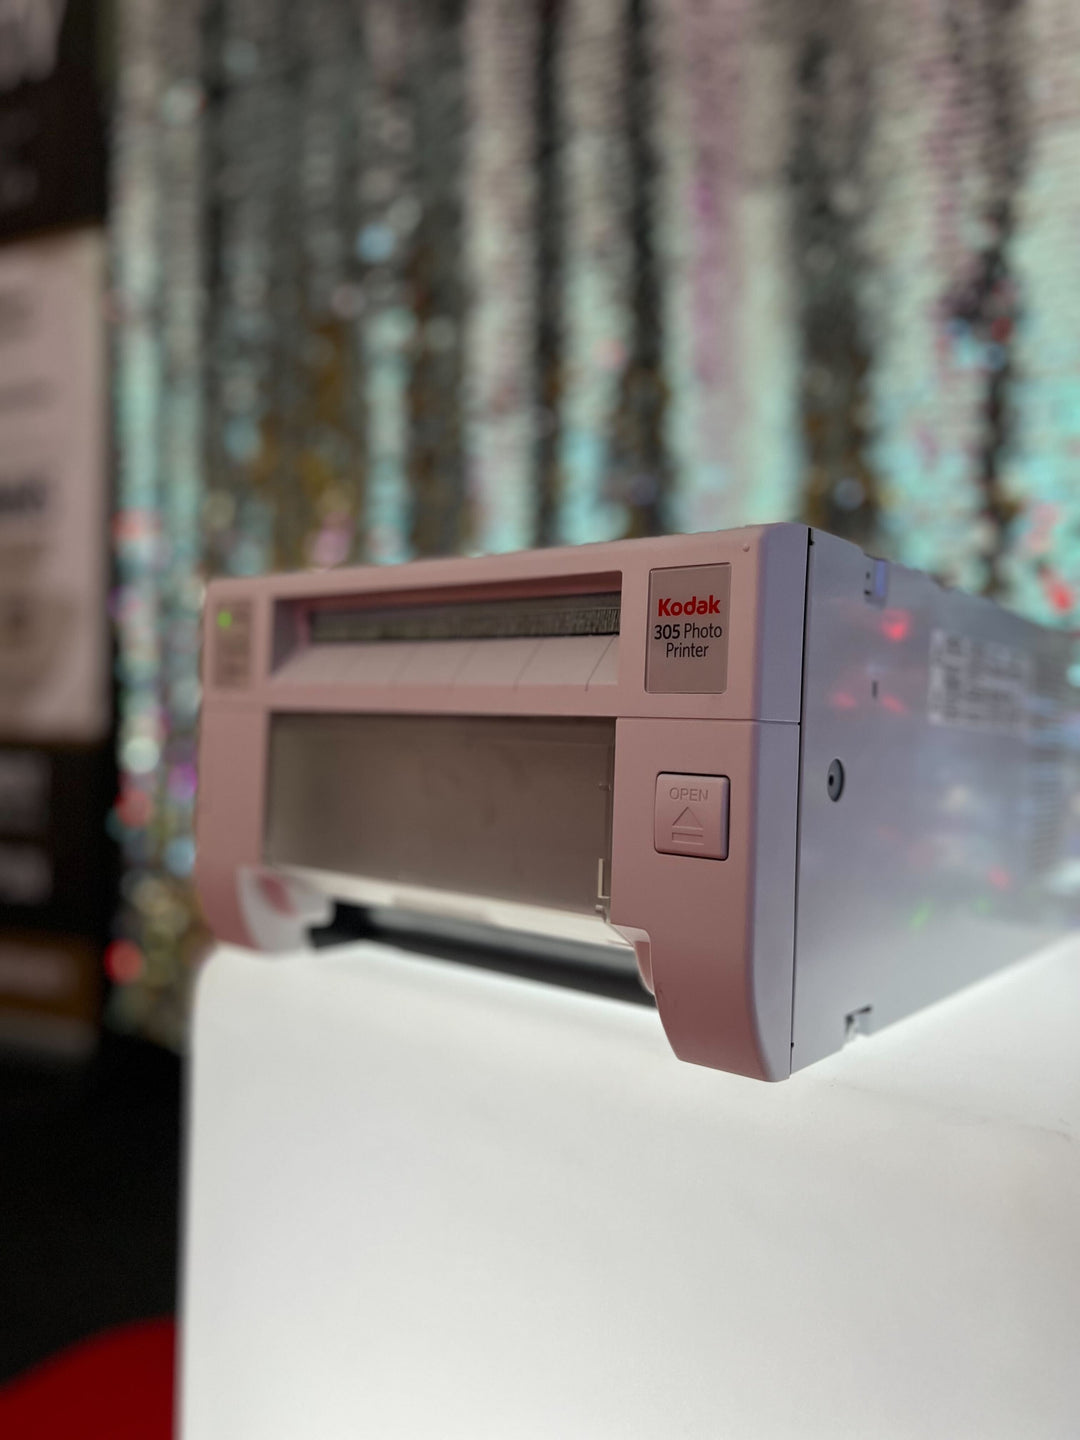 AZUR Distributeur KODAK MAROC - L'imprimante photo KODAK 305 est une  solution d'impression compacte et légère pour votre entreprise. Cette  imprimante abordable offre des impressions de qualité KODAK exceptionnelles  en deux tailles